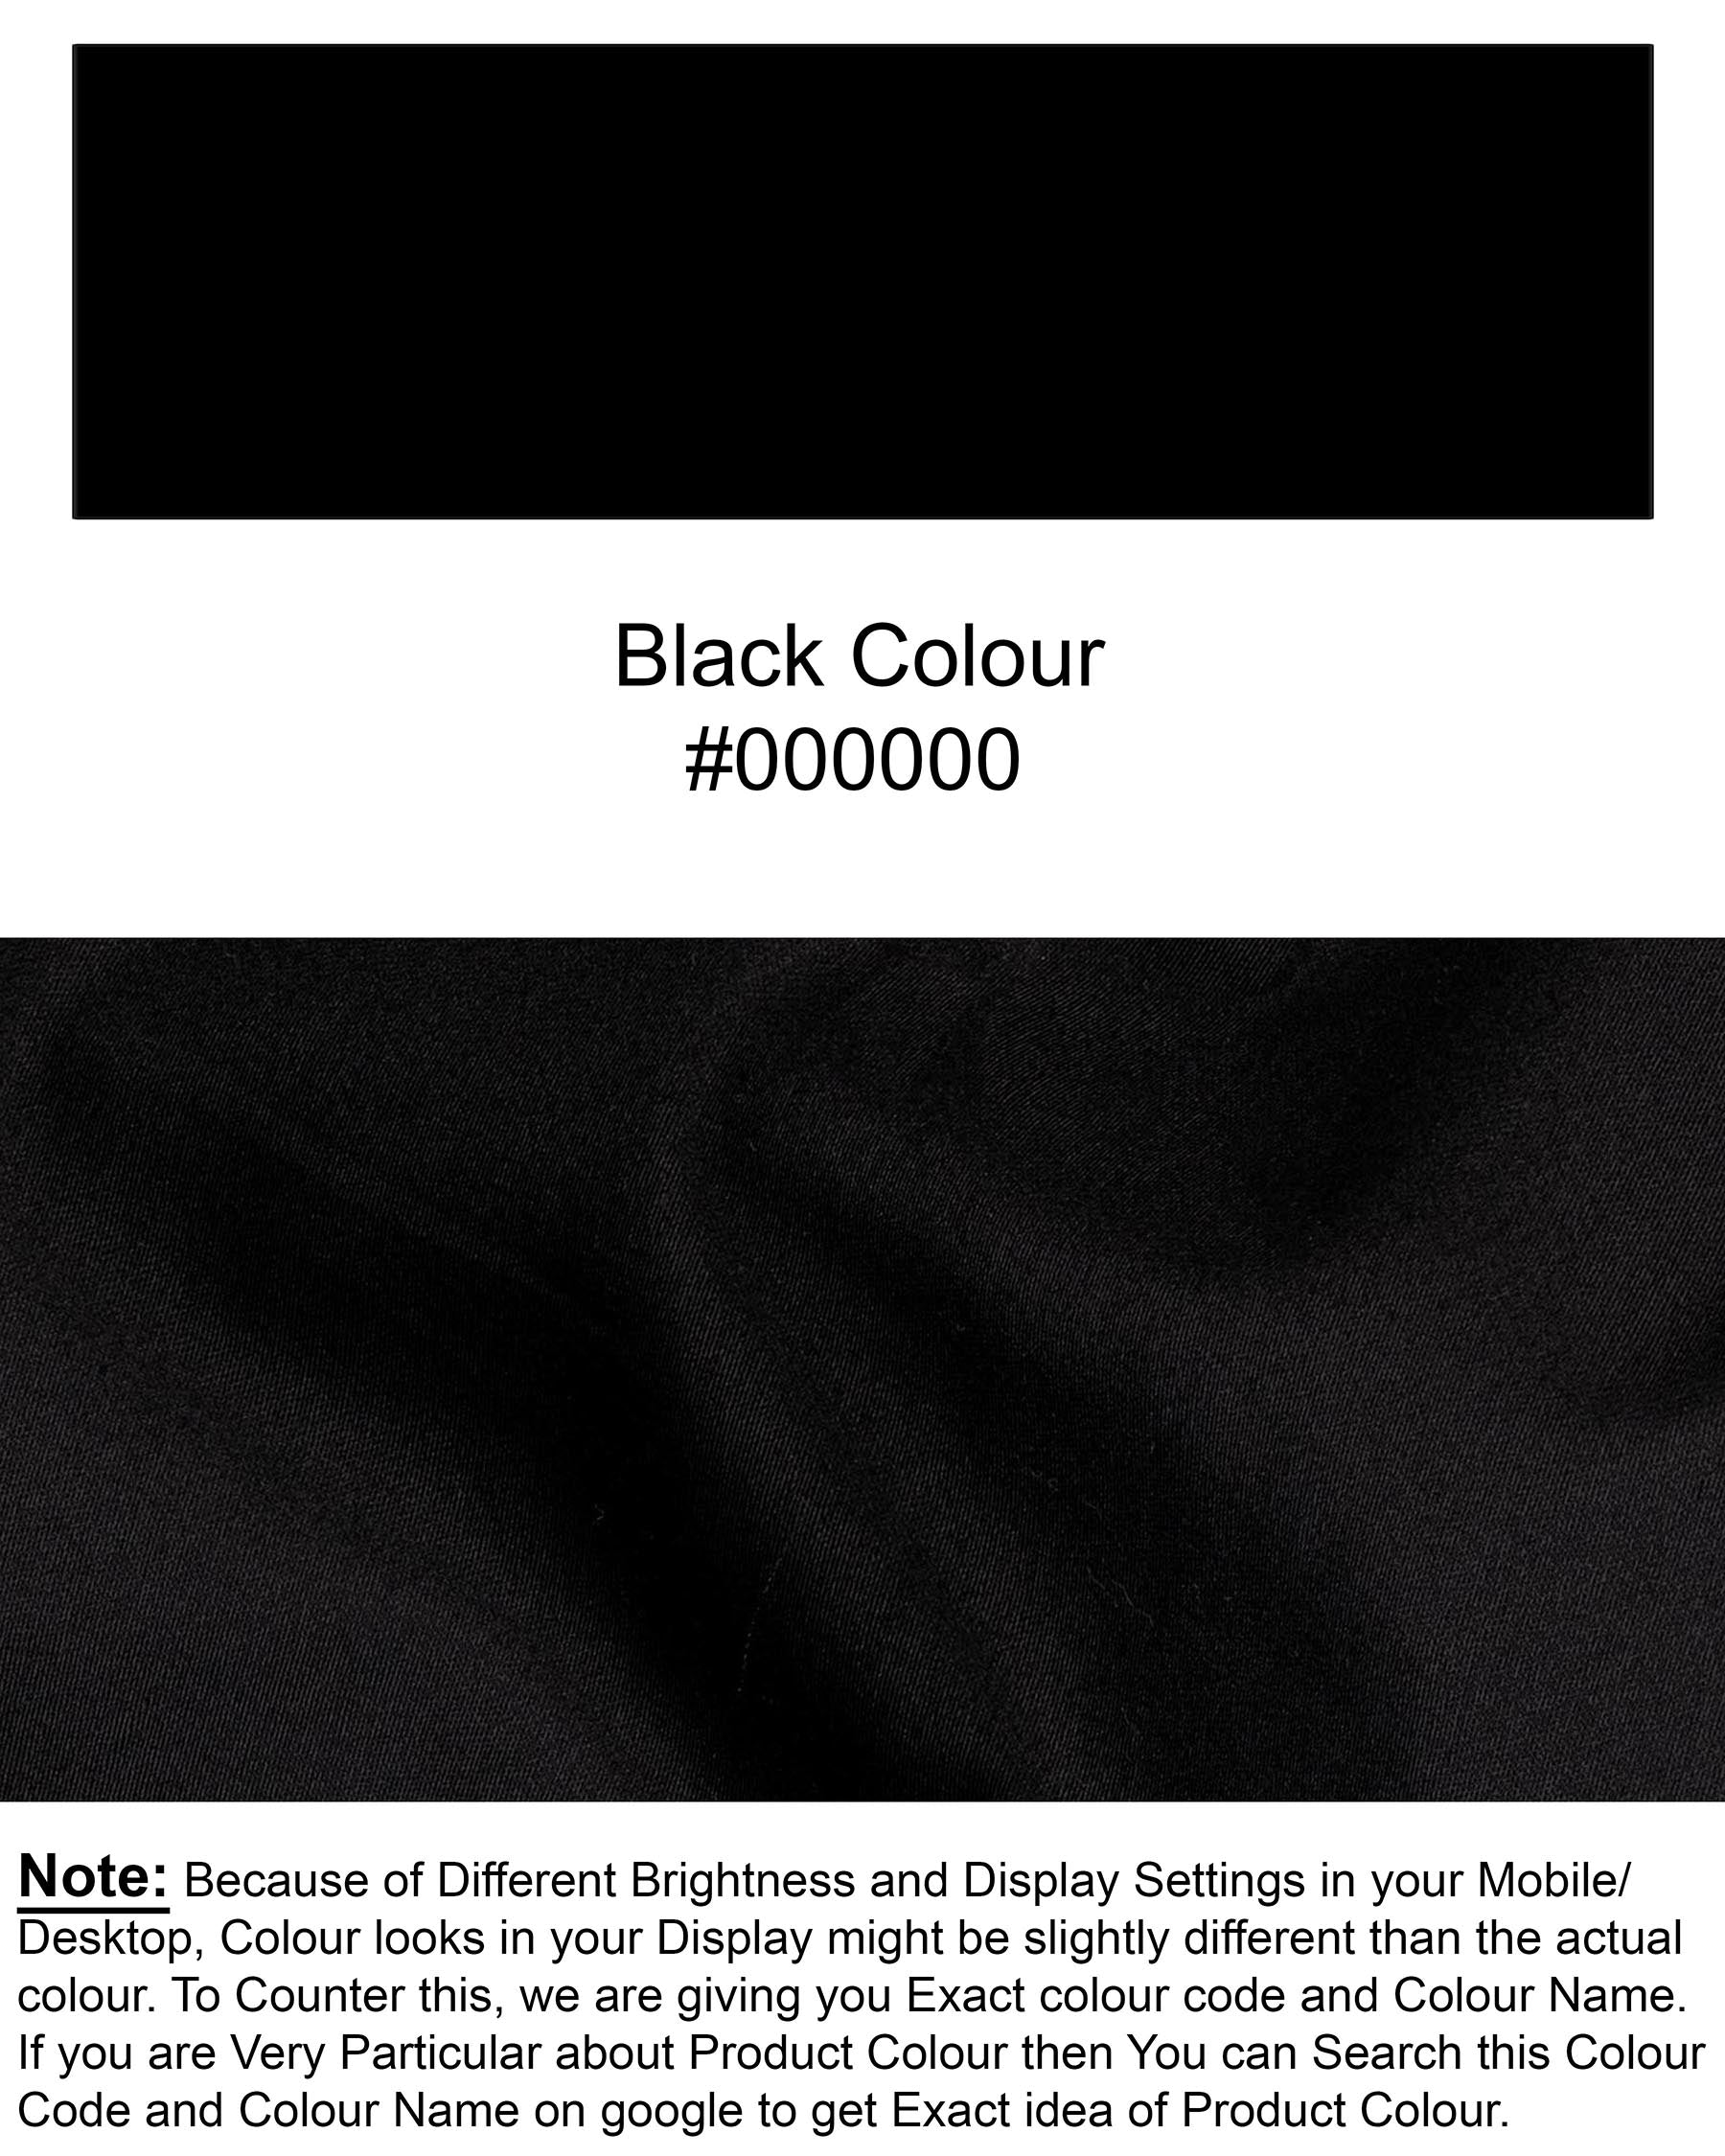 Jade Black Super Soft Premium Cotton Designer Lounge Pant LP165-28, LP165-30, LP165-32, LP165-34, LP165-36, LP165-38, LP165-40, LP165-42, LP165-44